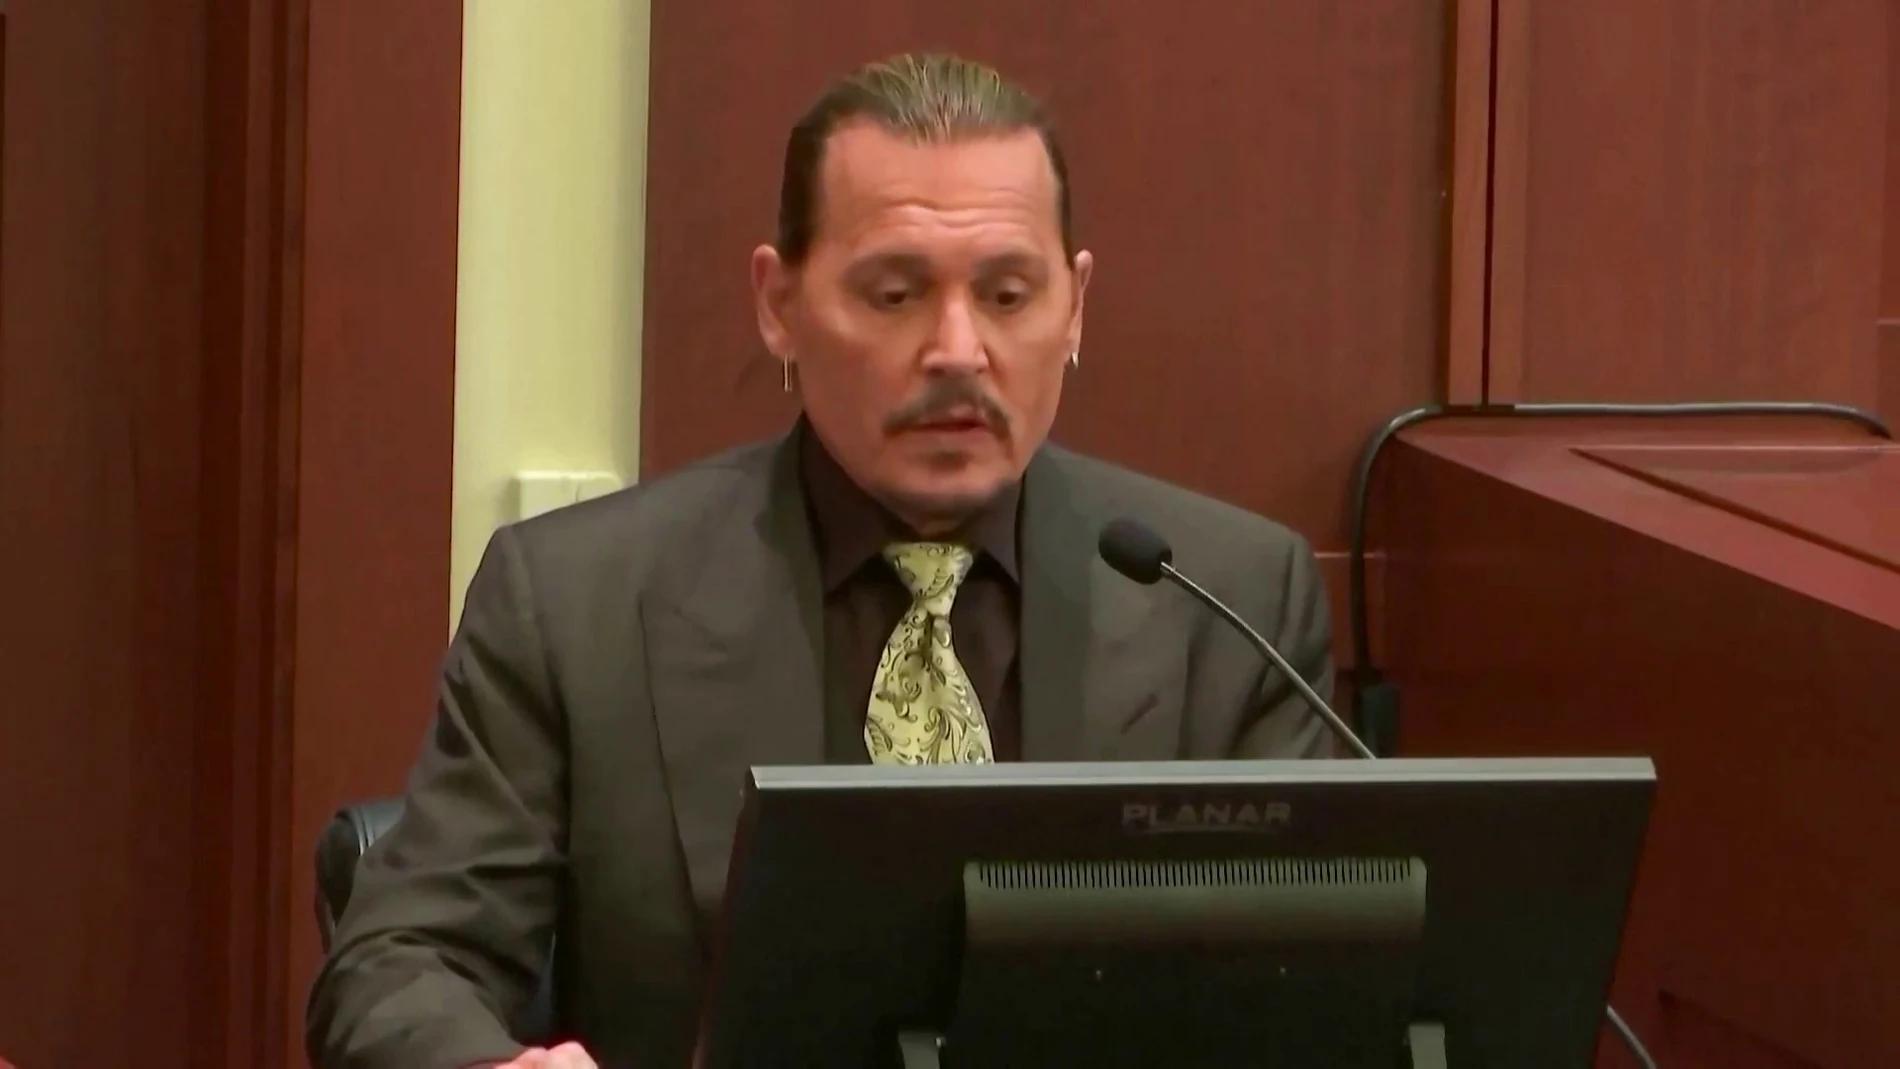 Johnny Depp, en el juicio contra su exmujer: "No he golpeado a una mujer en mi vida"